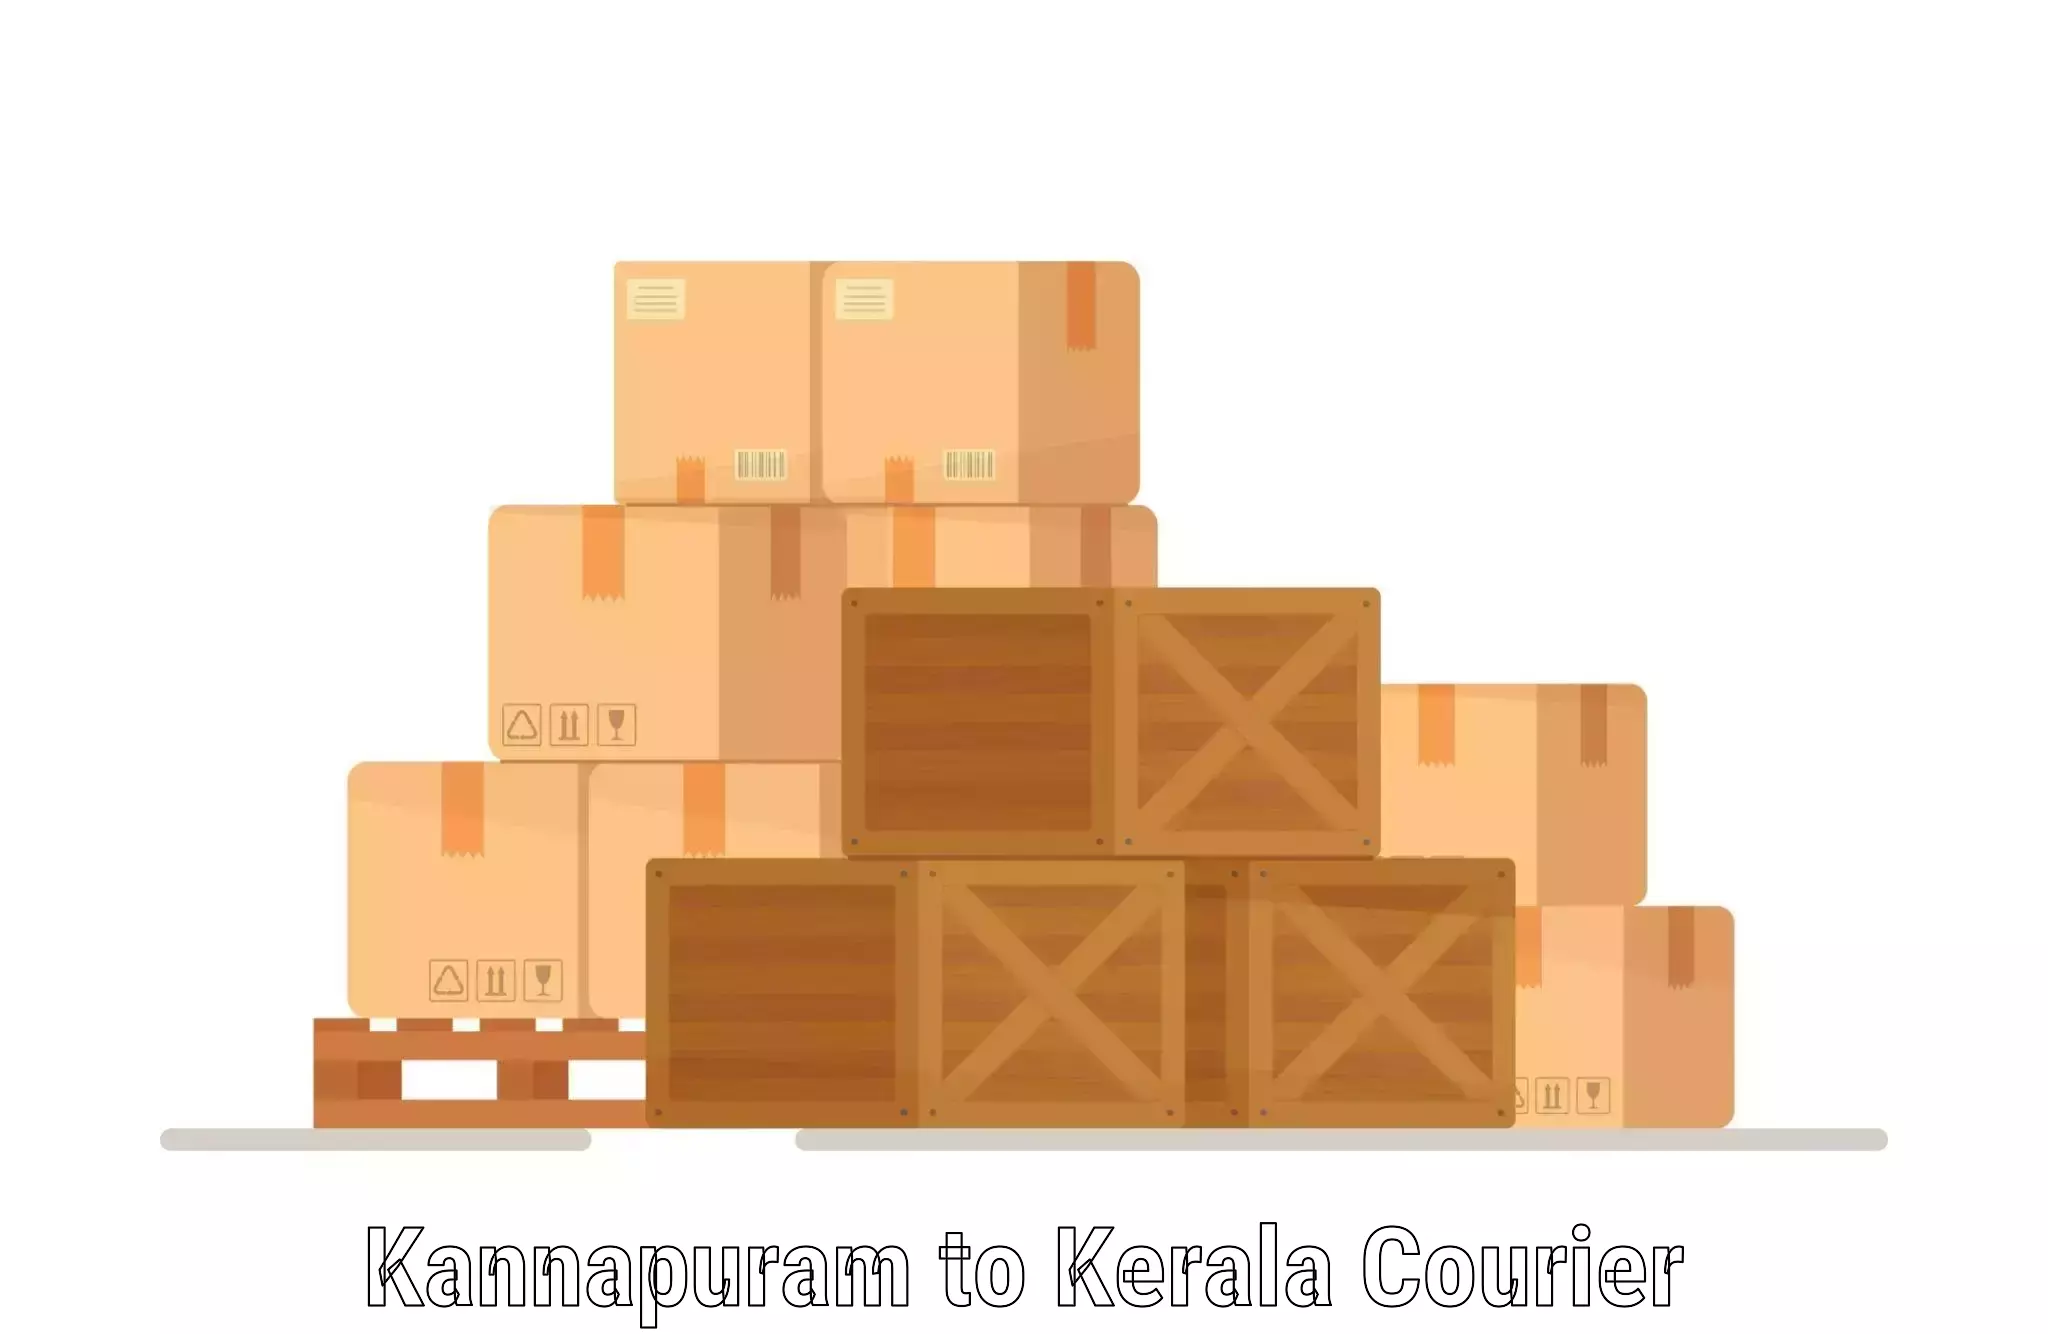 Professional courier handling Kannapuram to Kozhencherry